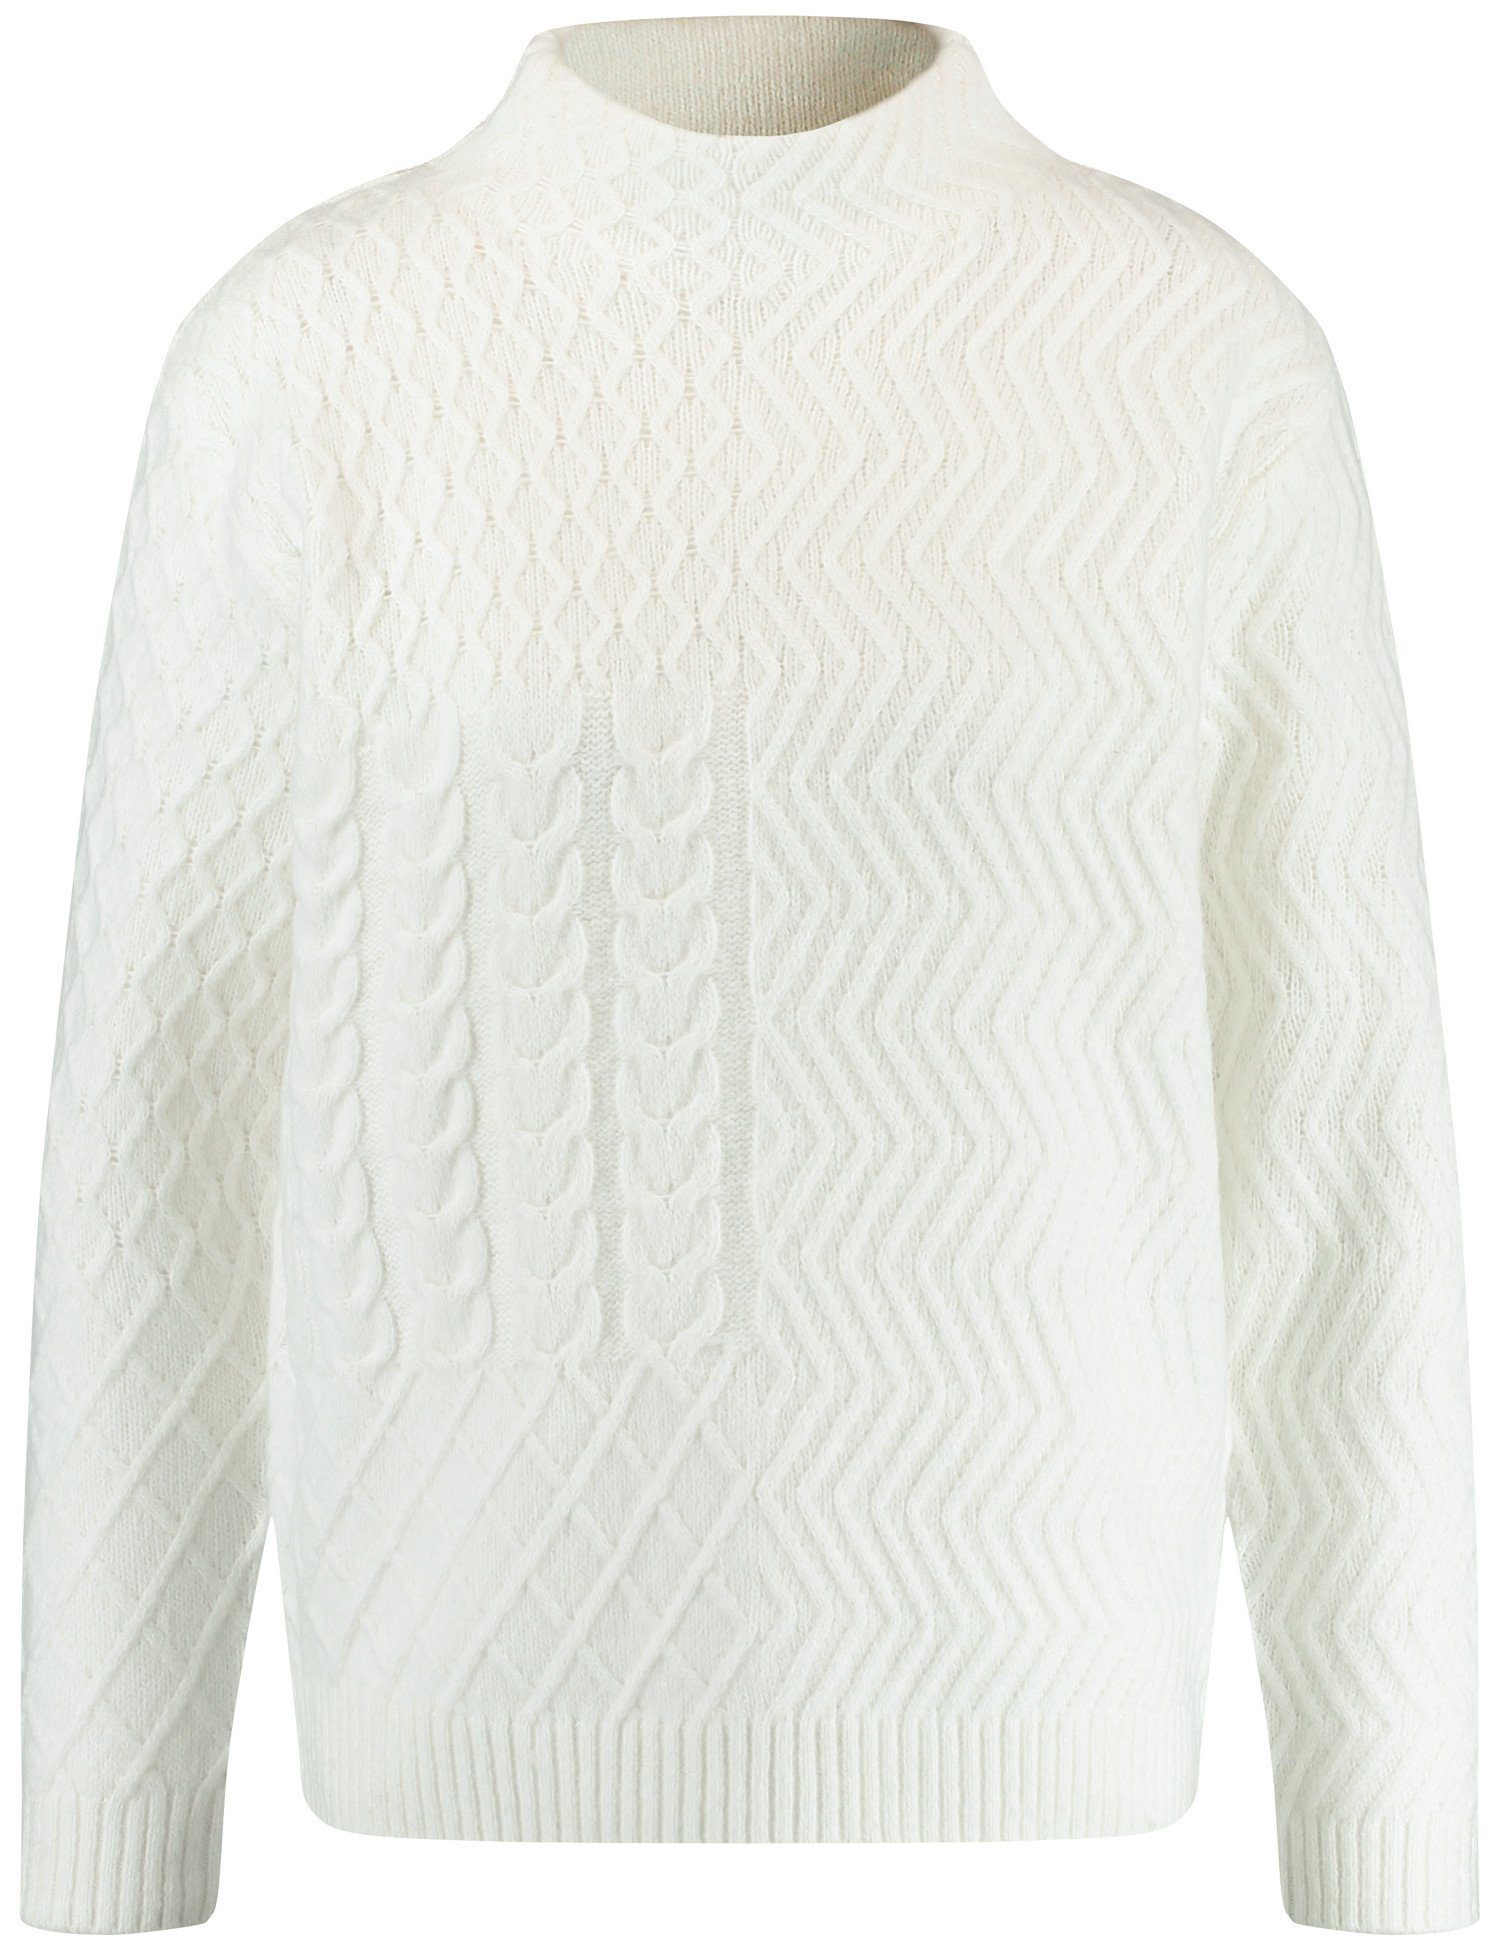 Turtleneck mit Strick-Muster WEBER Off-white und Pullover Rundhalspullover GERRY